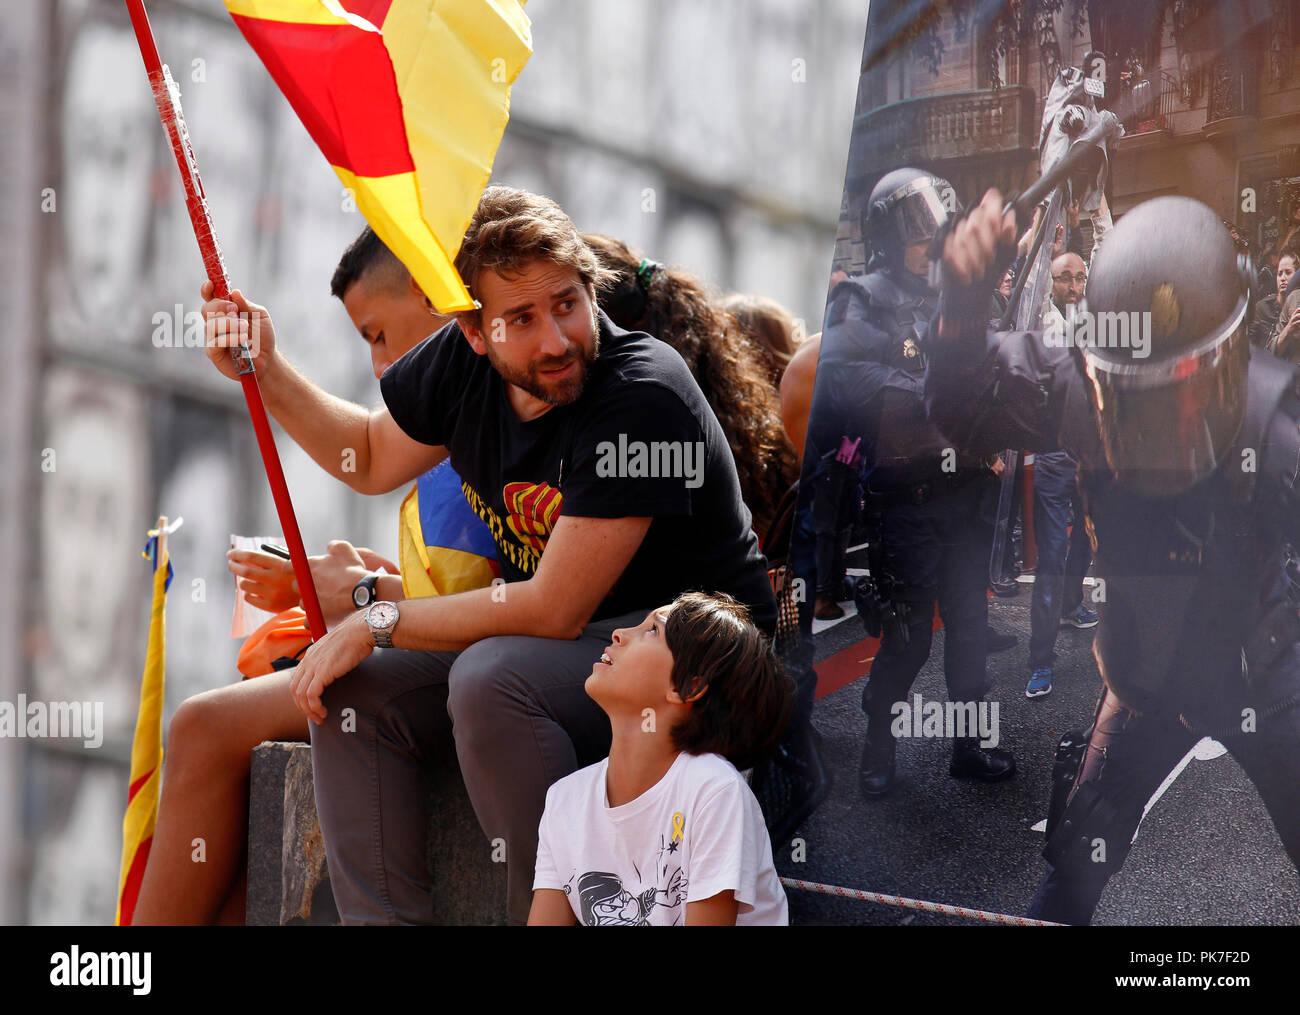 Barcelone, Espagne - 11 SEPTEMBRE : des milliers de personnes ont pris les principales avenues de Barcelone avec les drapeaux de l'indépendance à pleurer pour la liberté des prisonniers politiques et de demander l'indépendance de la Catalogne Espagne, la démonstration a été effectuée au cours de la célébration de la fête nationale de la Catalogne le 11 septembre 2018 à Barcelone, Espagne. Photo par Elkin Cabarcas / Alamy Live News Banque D'Images